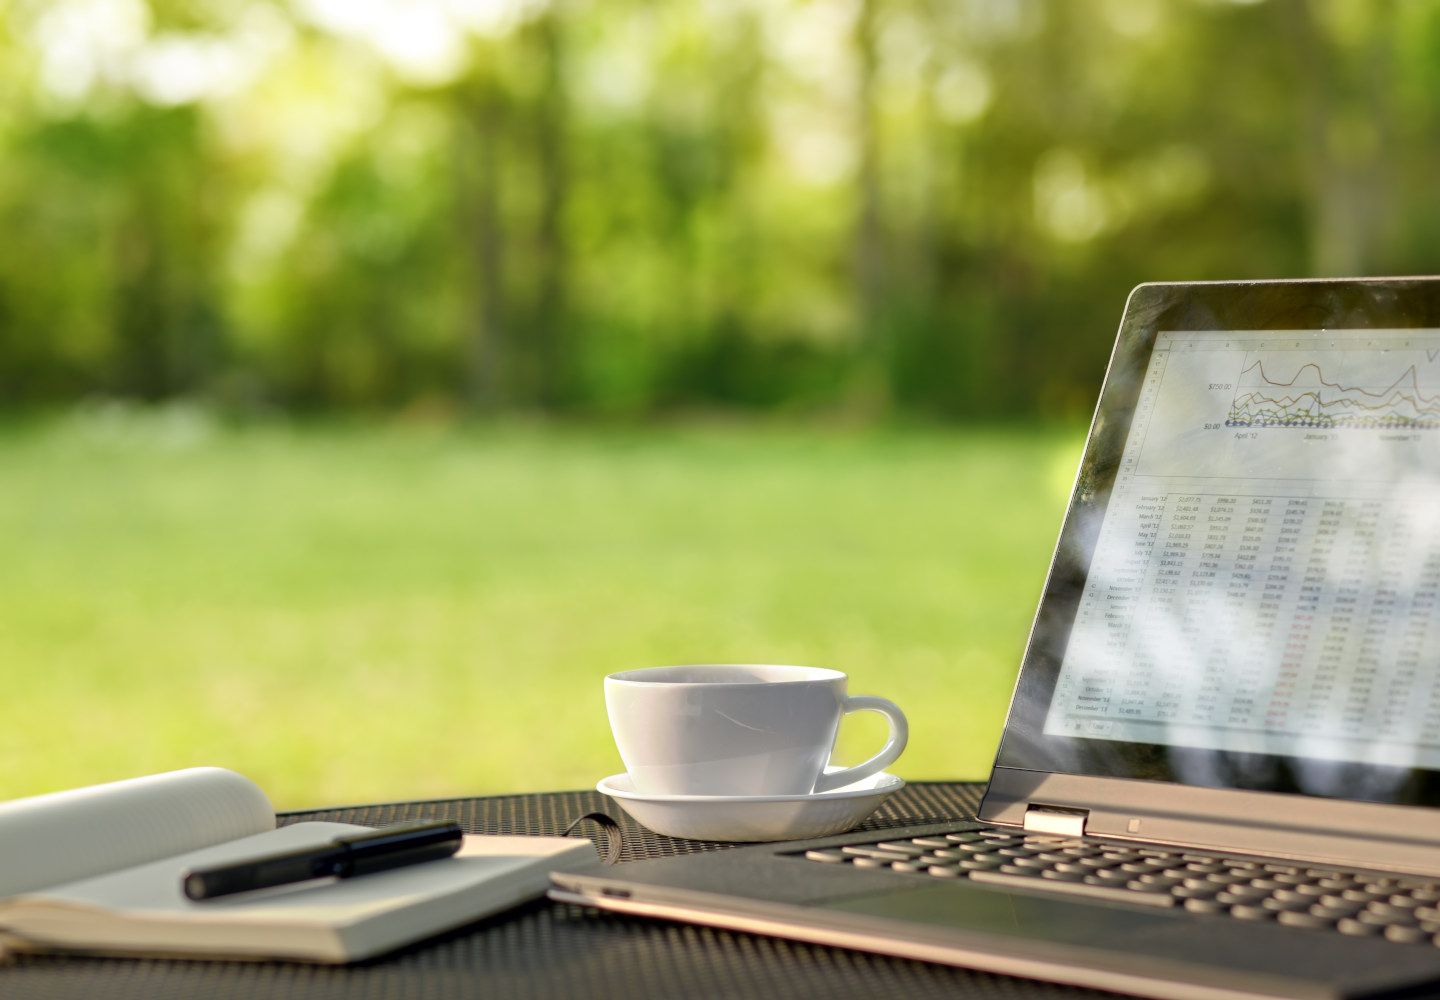 Foto af en laptop, der står på et bord udenfor sammen med en kop og en blok med en pen